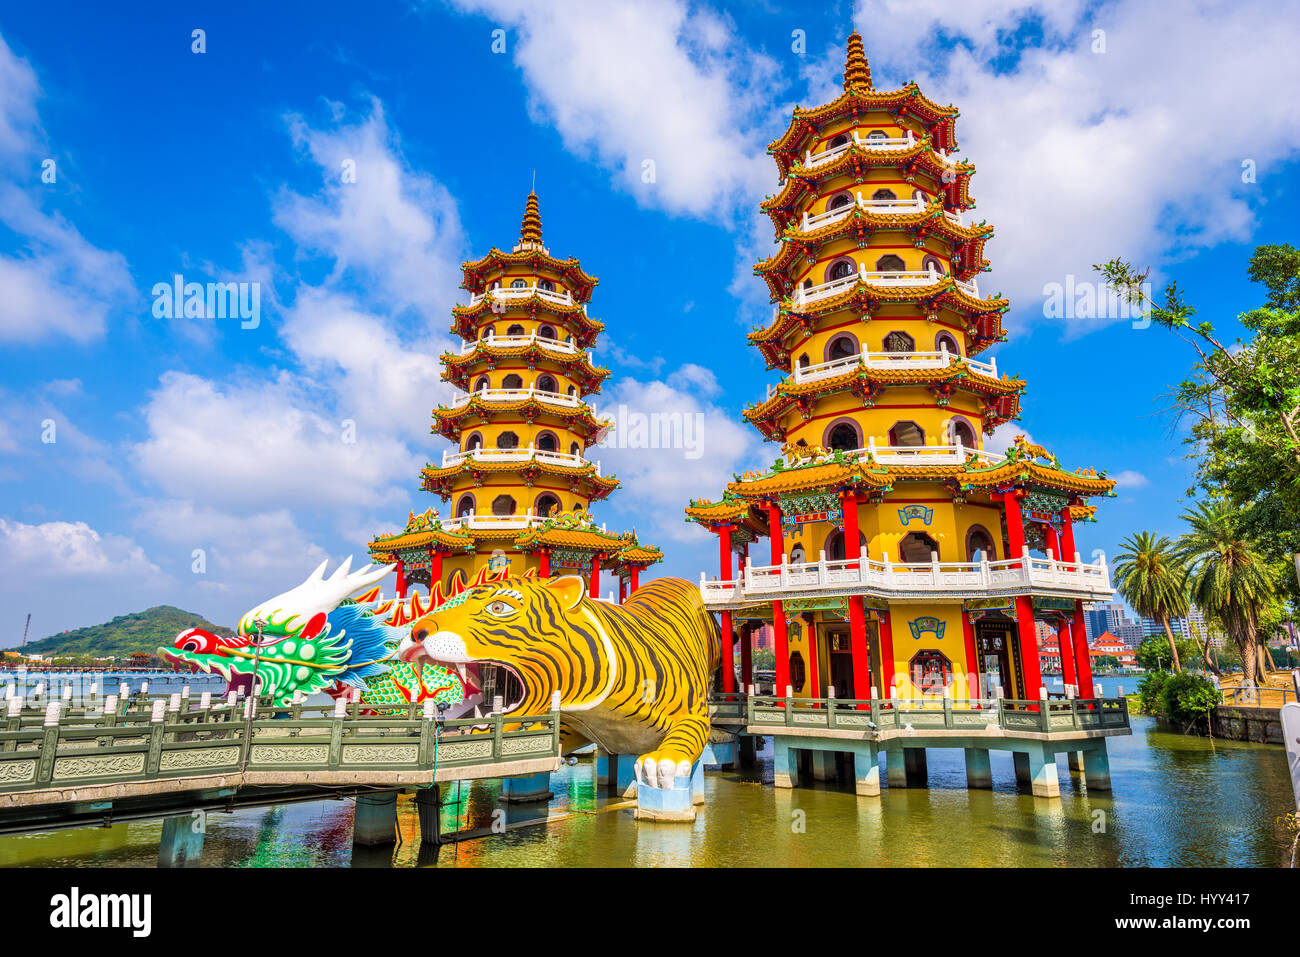 Kaohsiung, Taiwan Lotus Pond's Dragon et Tigre de pagodes dans la nuit. Banque D'Images